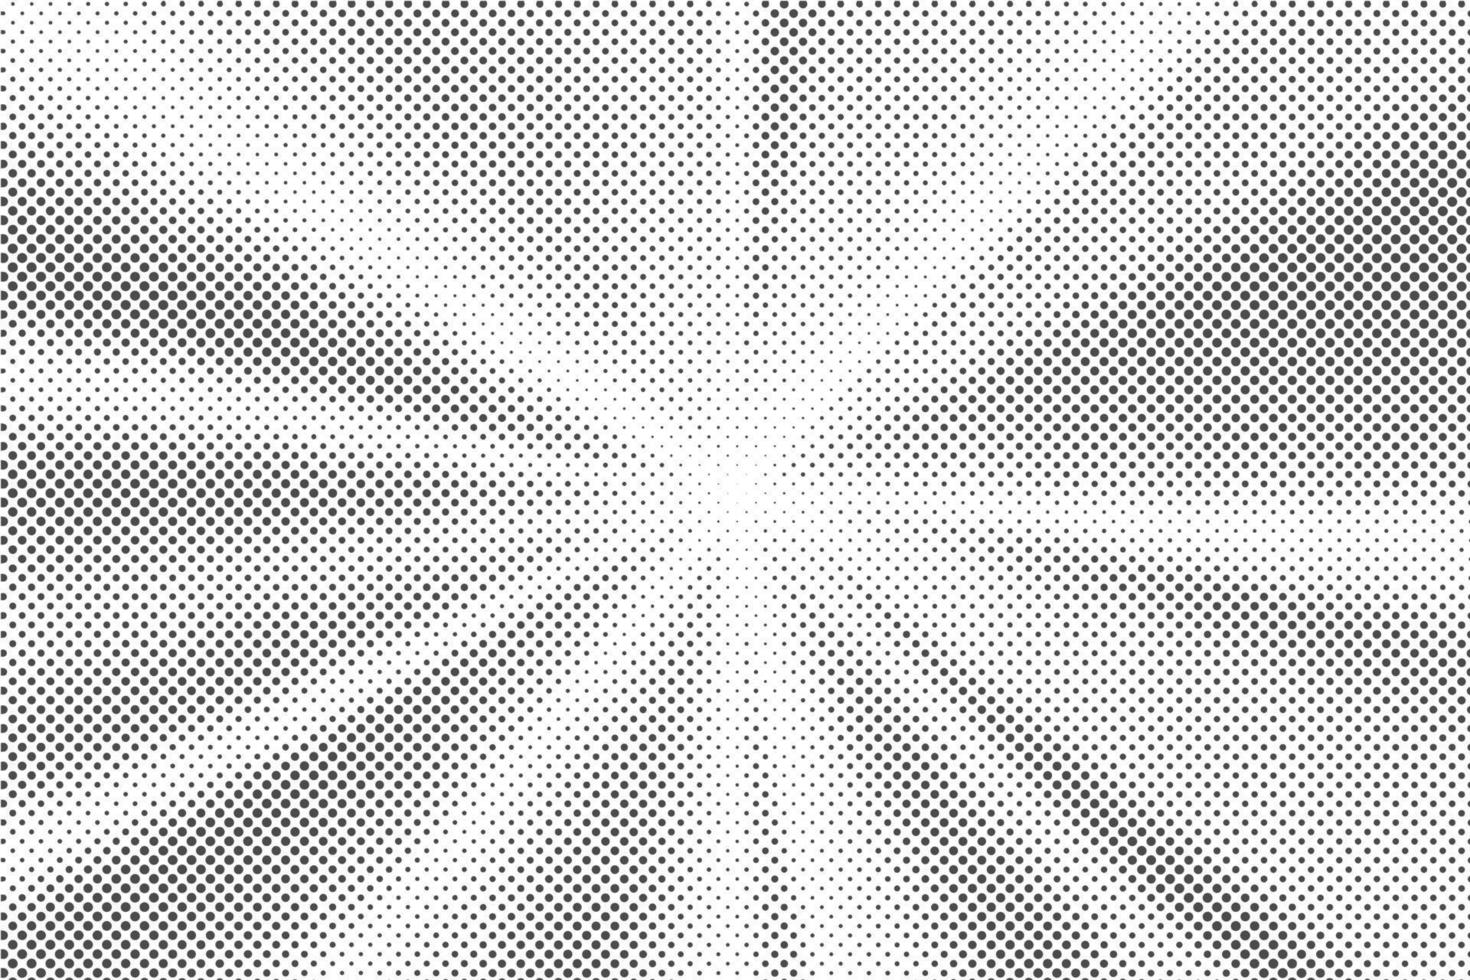 sonnenstrahlen halbtonhintergrund. weißes und graues radiales abstraktes komisches Muster. Vektor Explosion abstrakte Linien Hintergrund